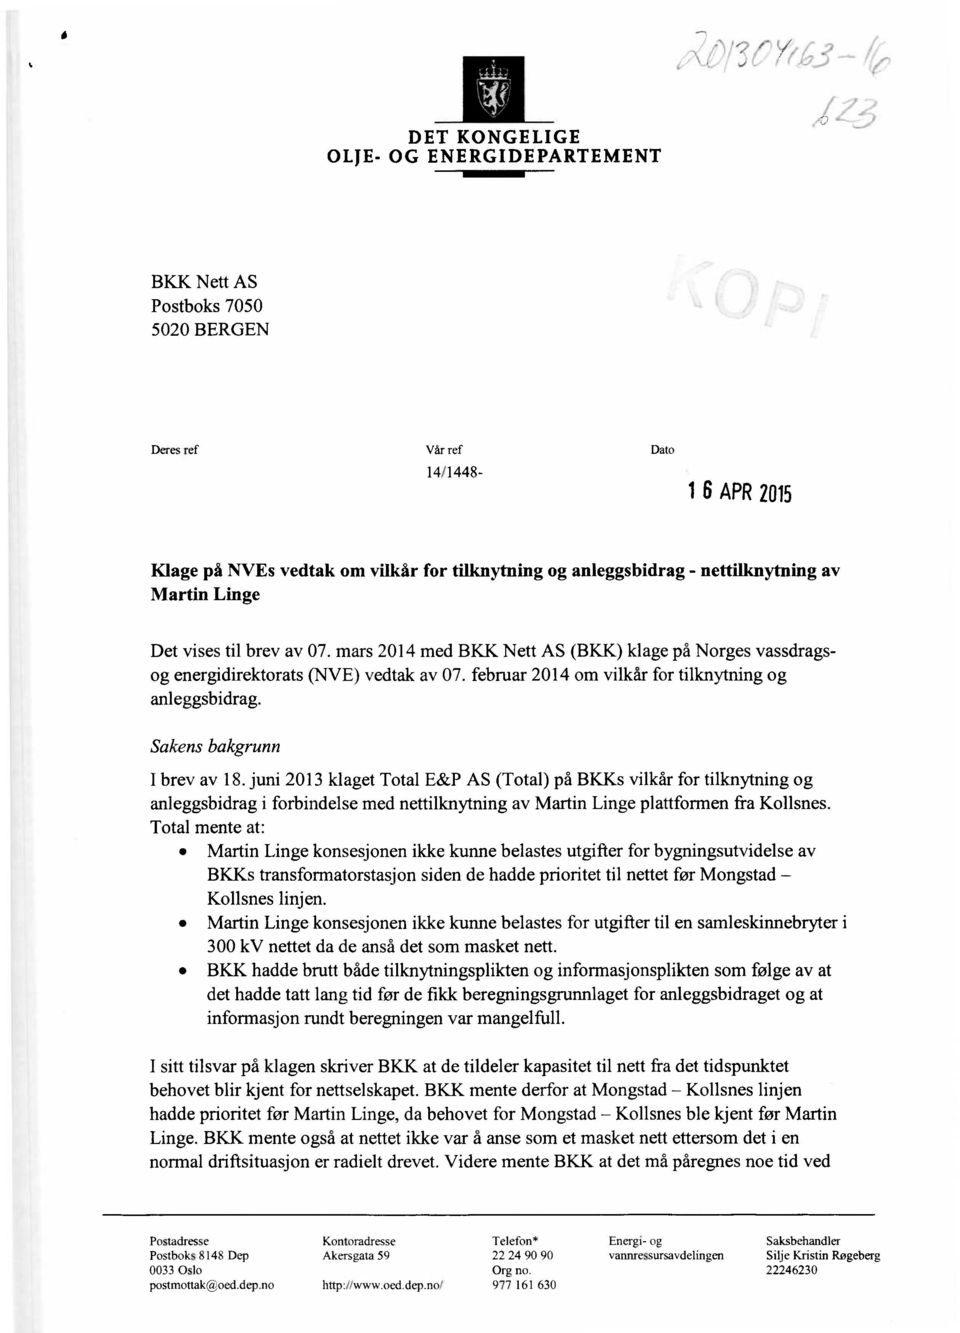 nettilknytning av Martin Linge 14/1448- Det vises til brev av 07. mars 2014 med BKK Nett AS (BKK) klage på Norges vassdragsog energidirektorats (NVE) vedtak av 07.